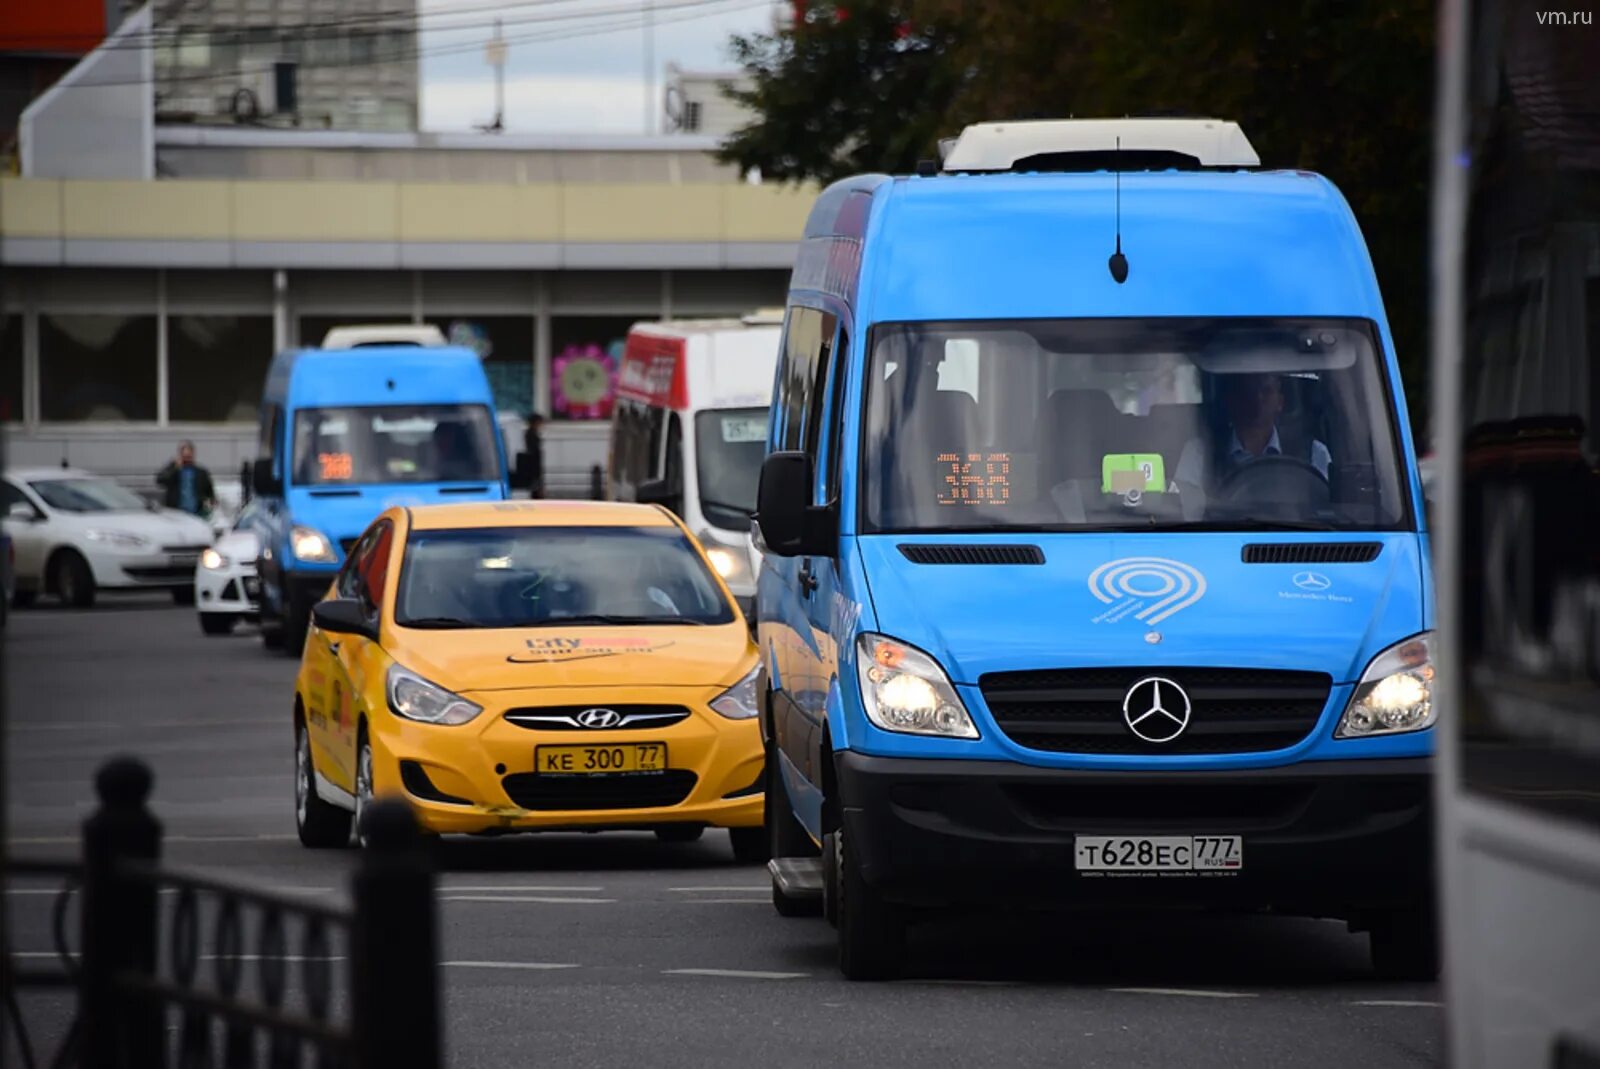 Городские маршрутные автобусы. Fiat Ducato автобус Мосгортранс. Общественный транспорт такси. Маршрутное такси в Москве. Автобус и автомобиль.